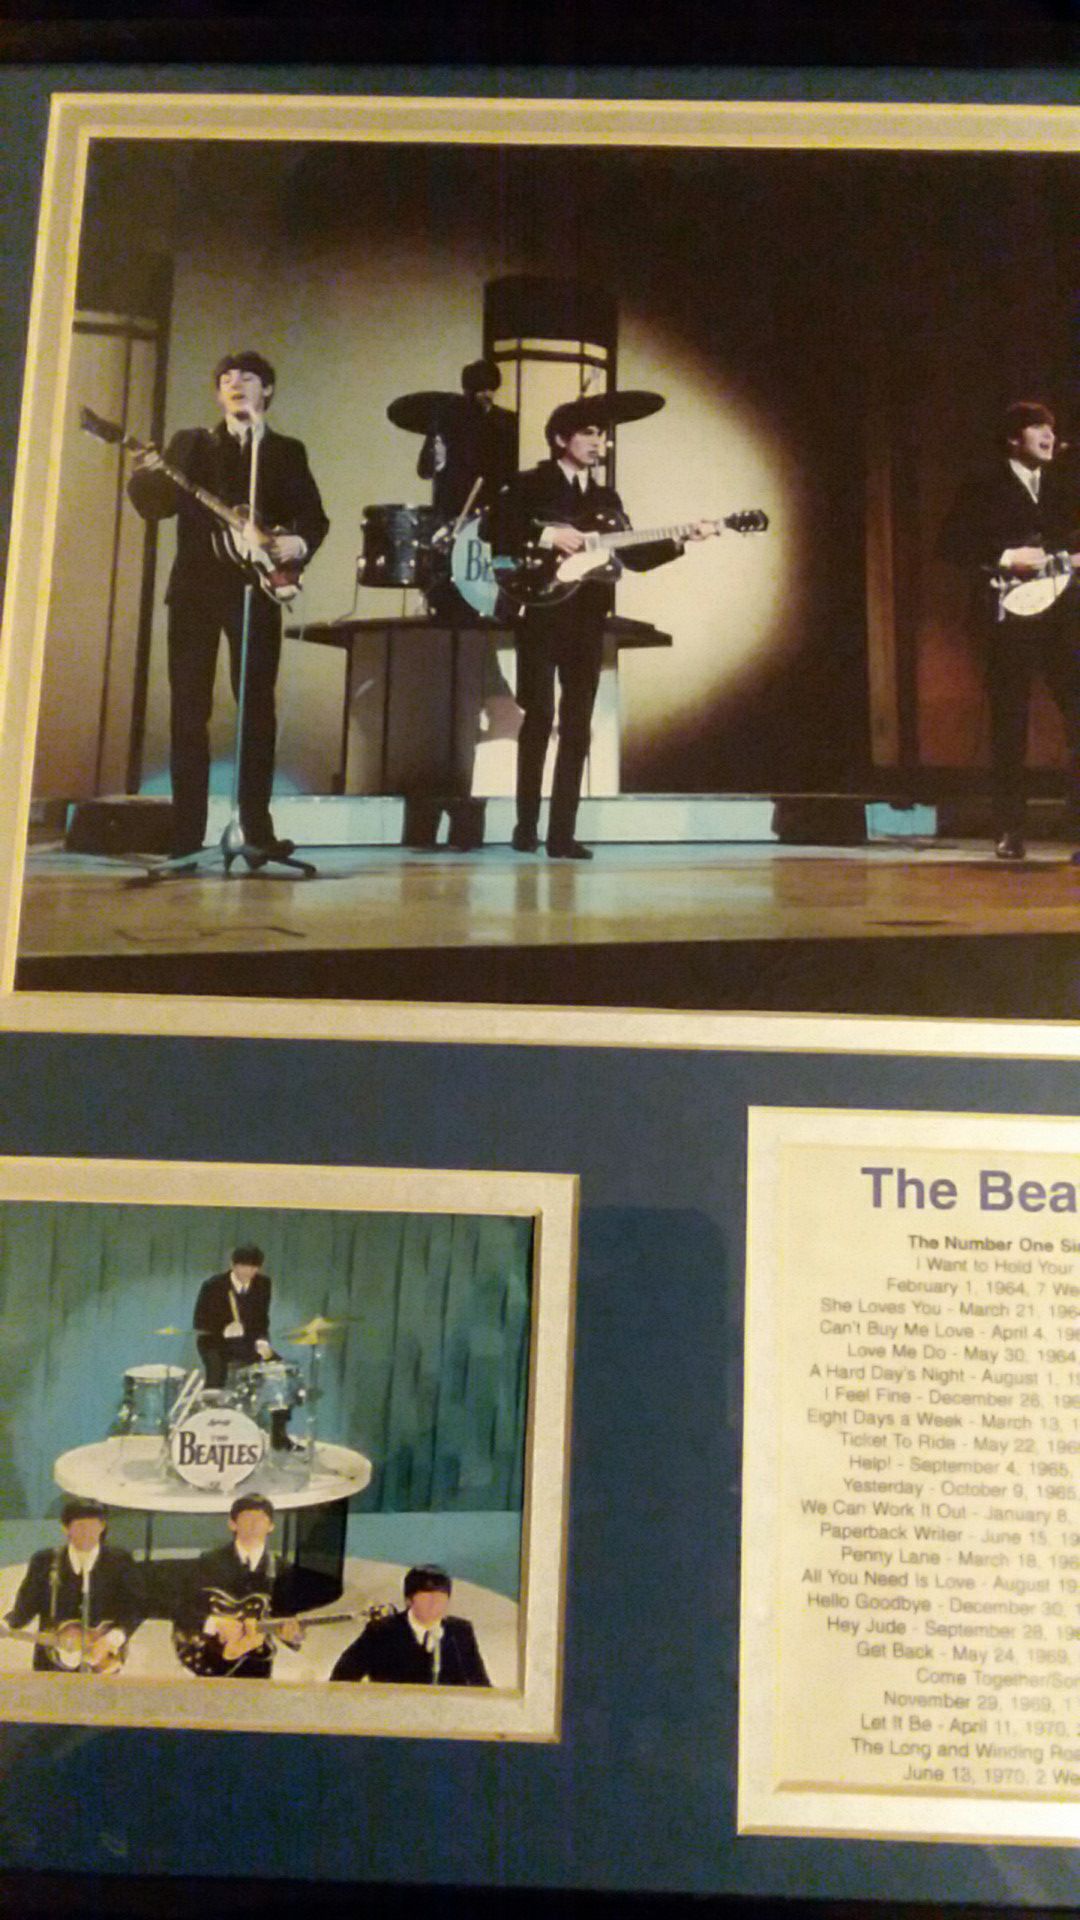 The beatles original picture 1964